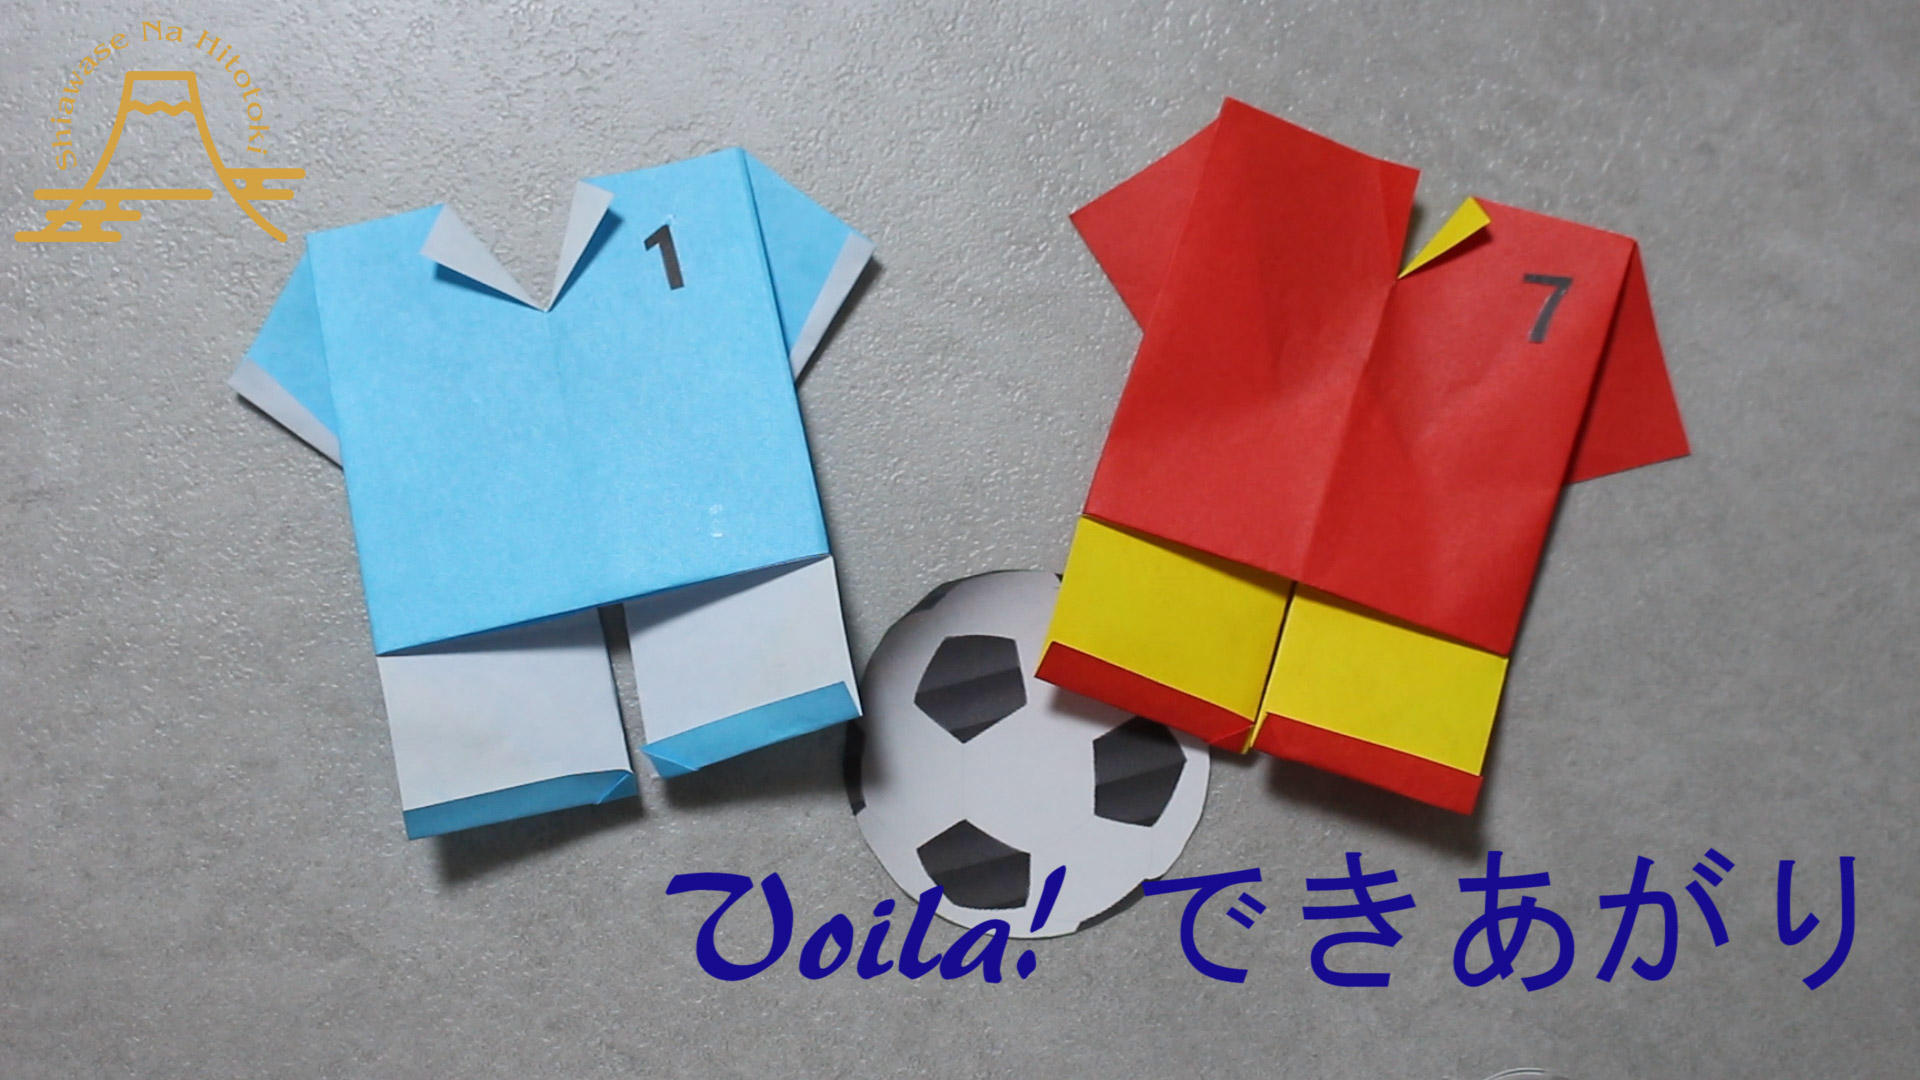 簡単 折り紙 サッカーユニフォーム サッカーウェア 折り紙の折り方 幸せなひと時